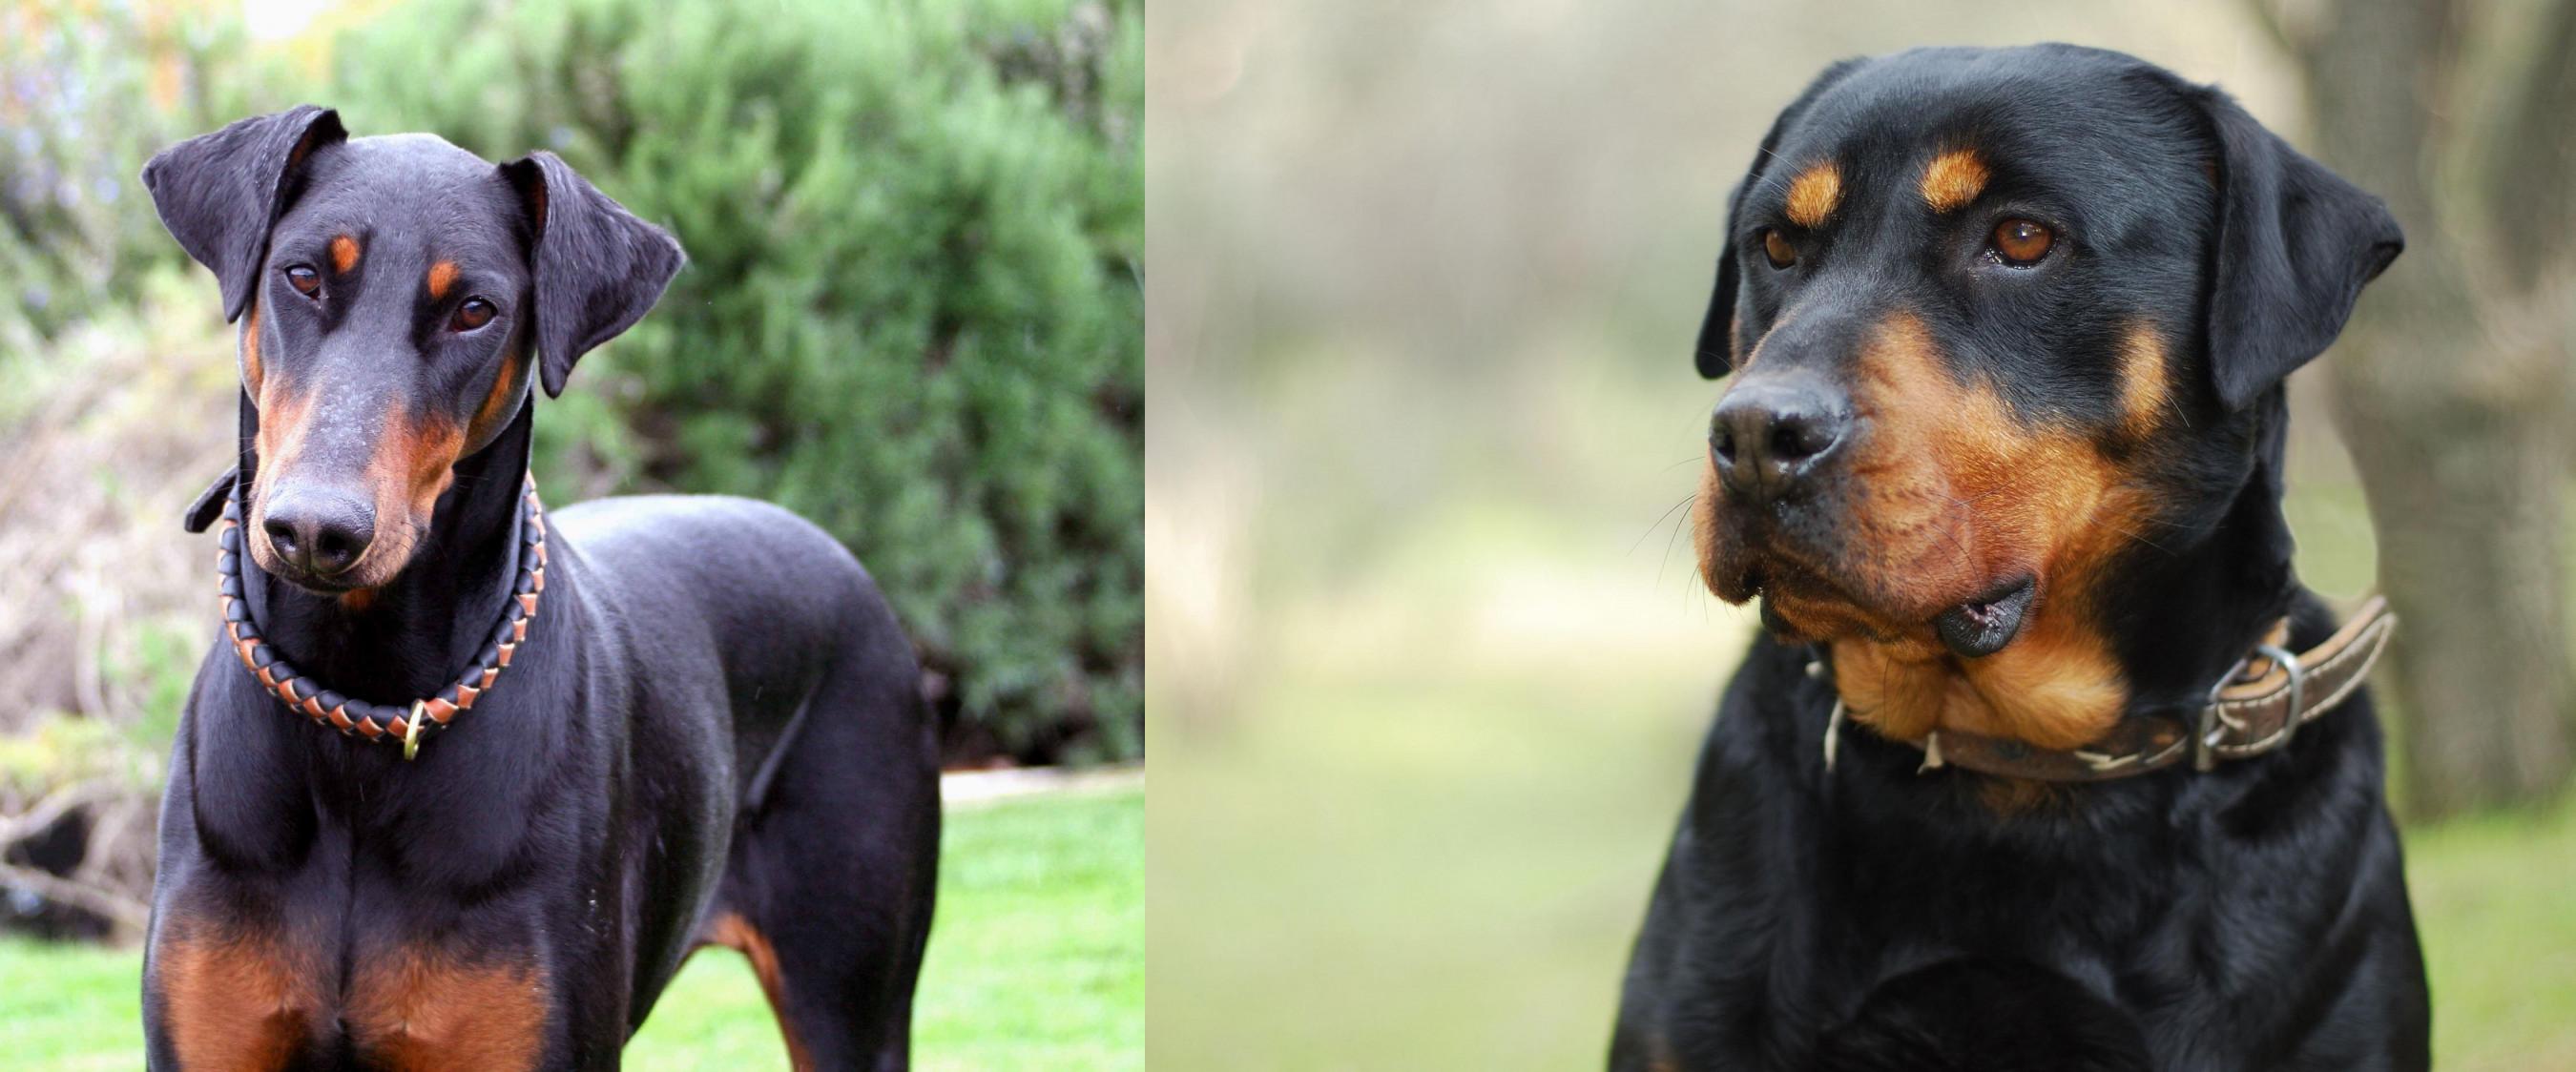 Doberman Pinscher vs Rottweiler Breed Comparison